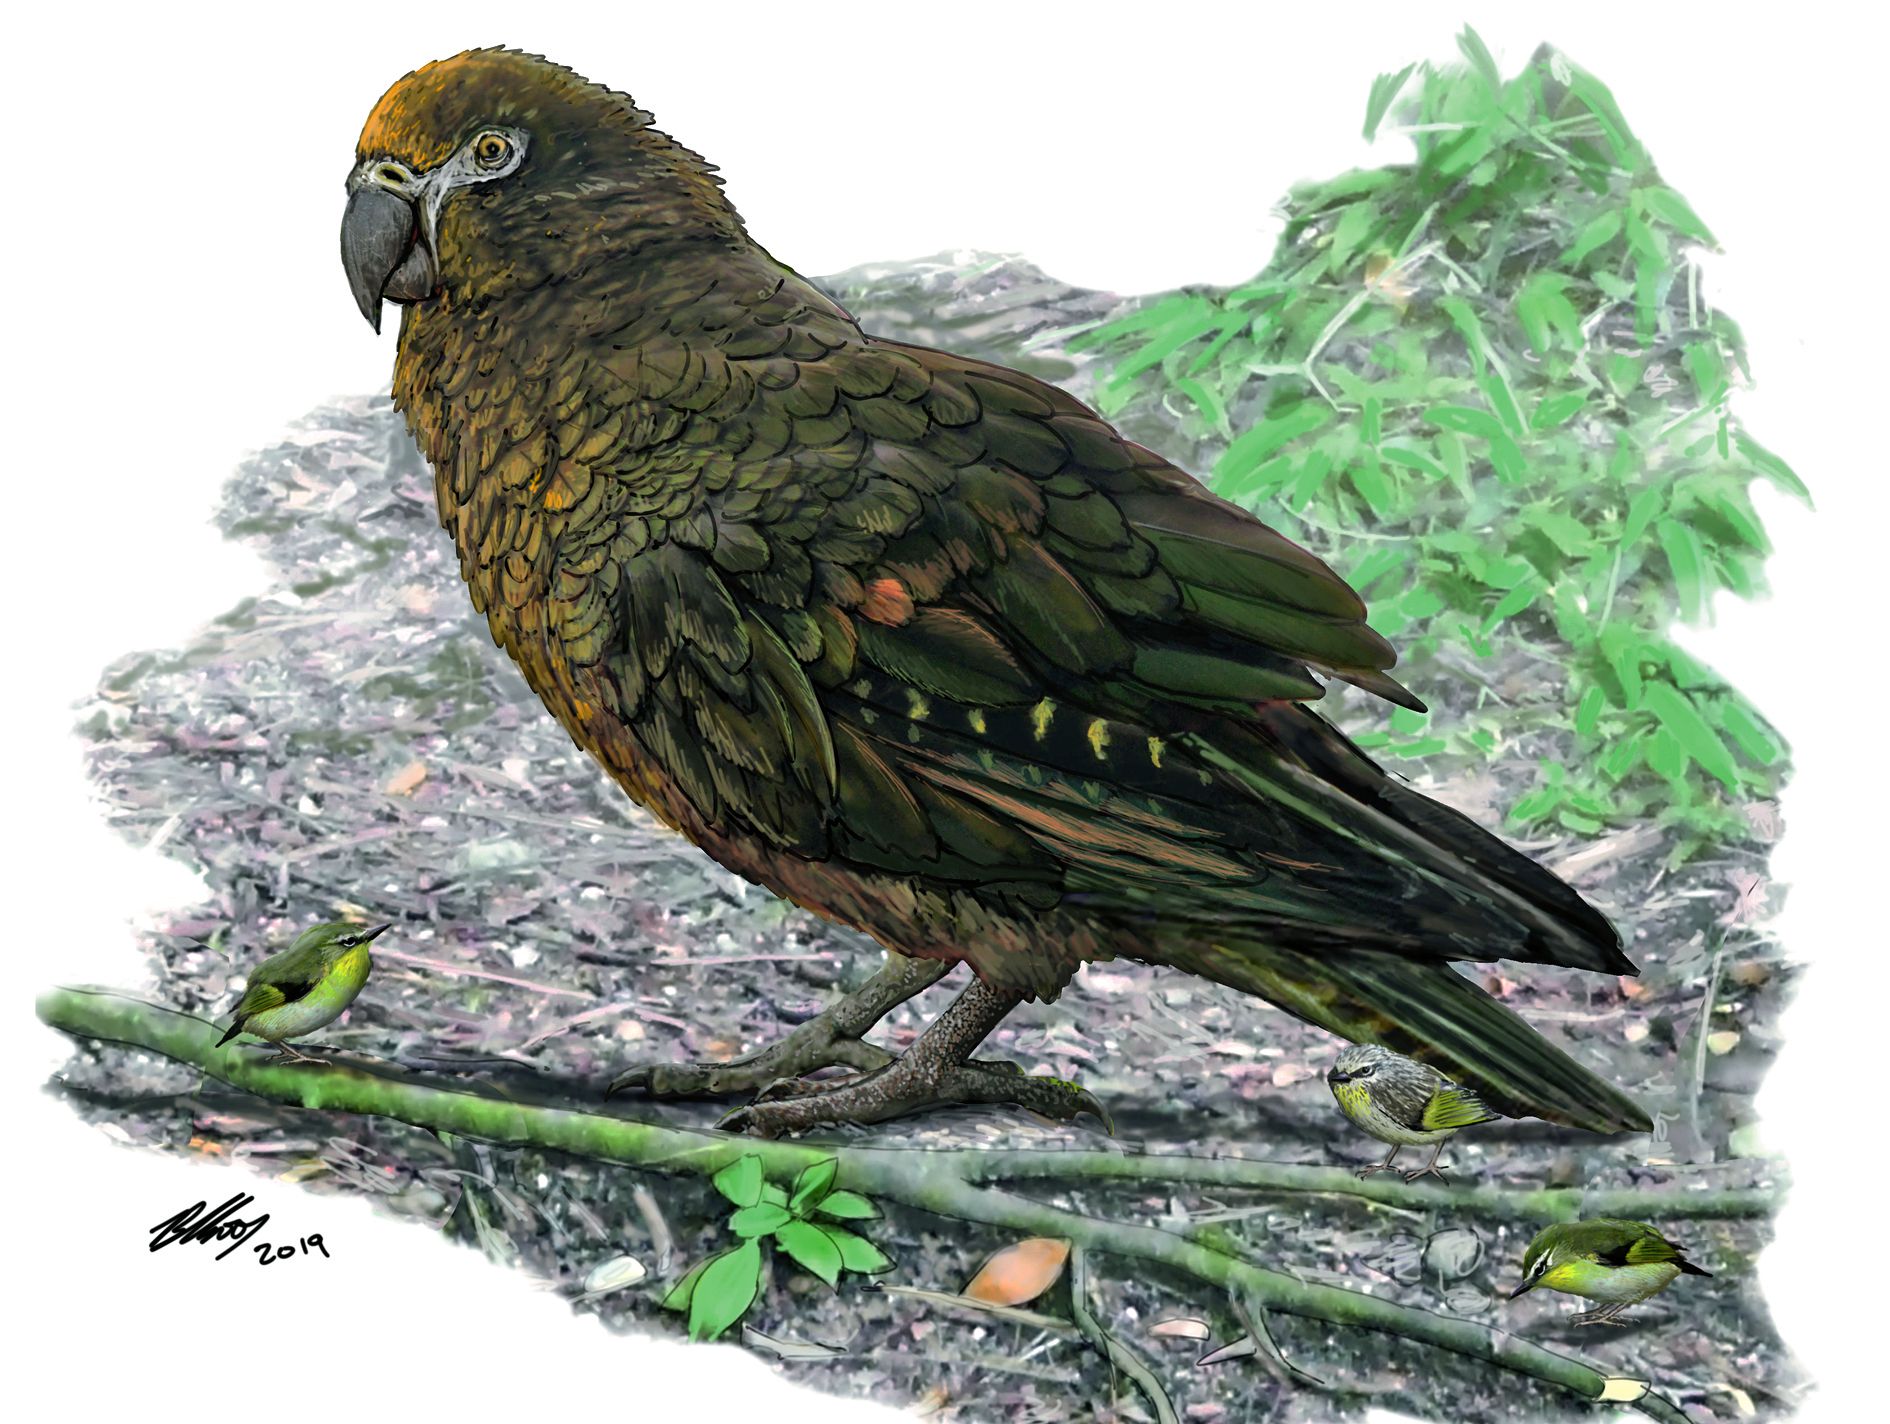 L’oiseau faisait à peu près deux fois la taille du kakapo. Dessin B.Choo 